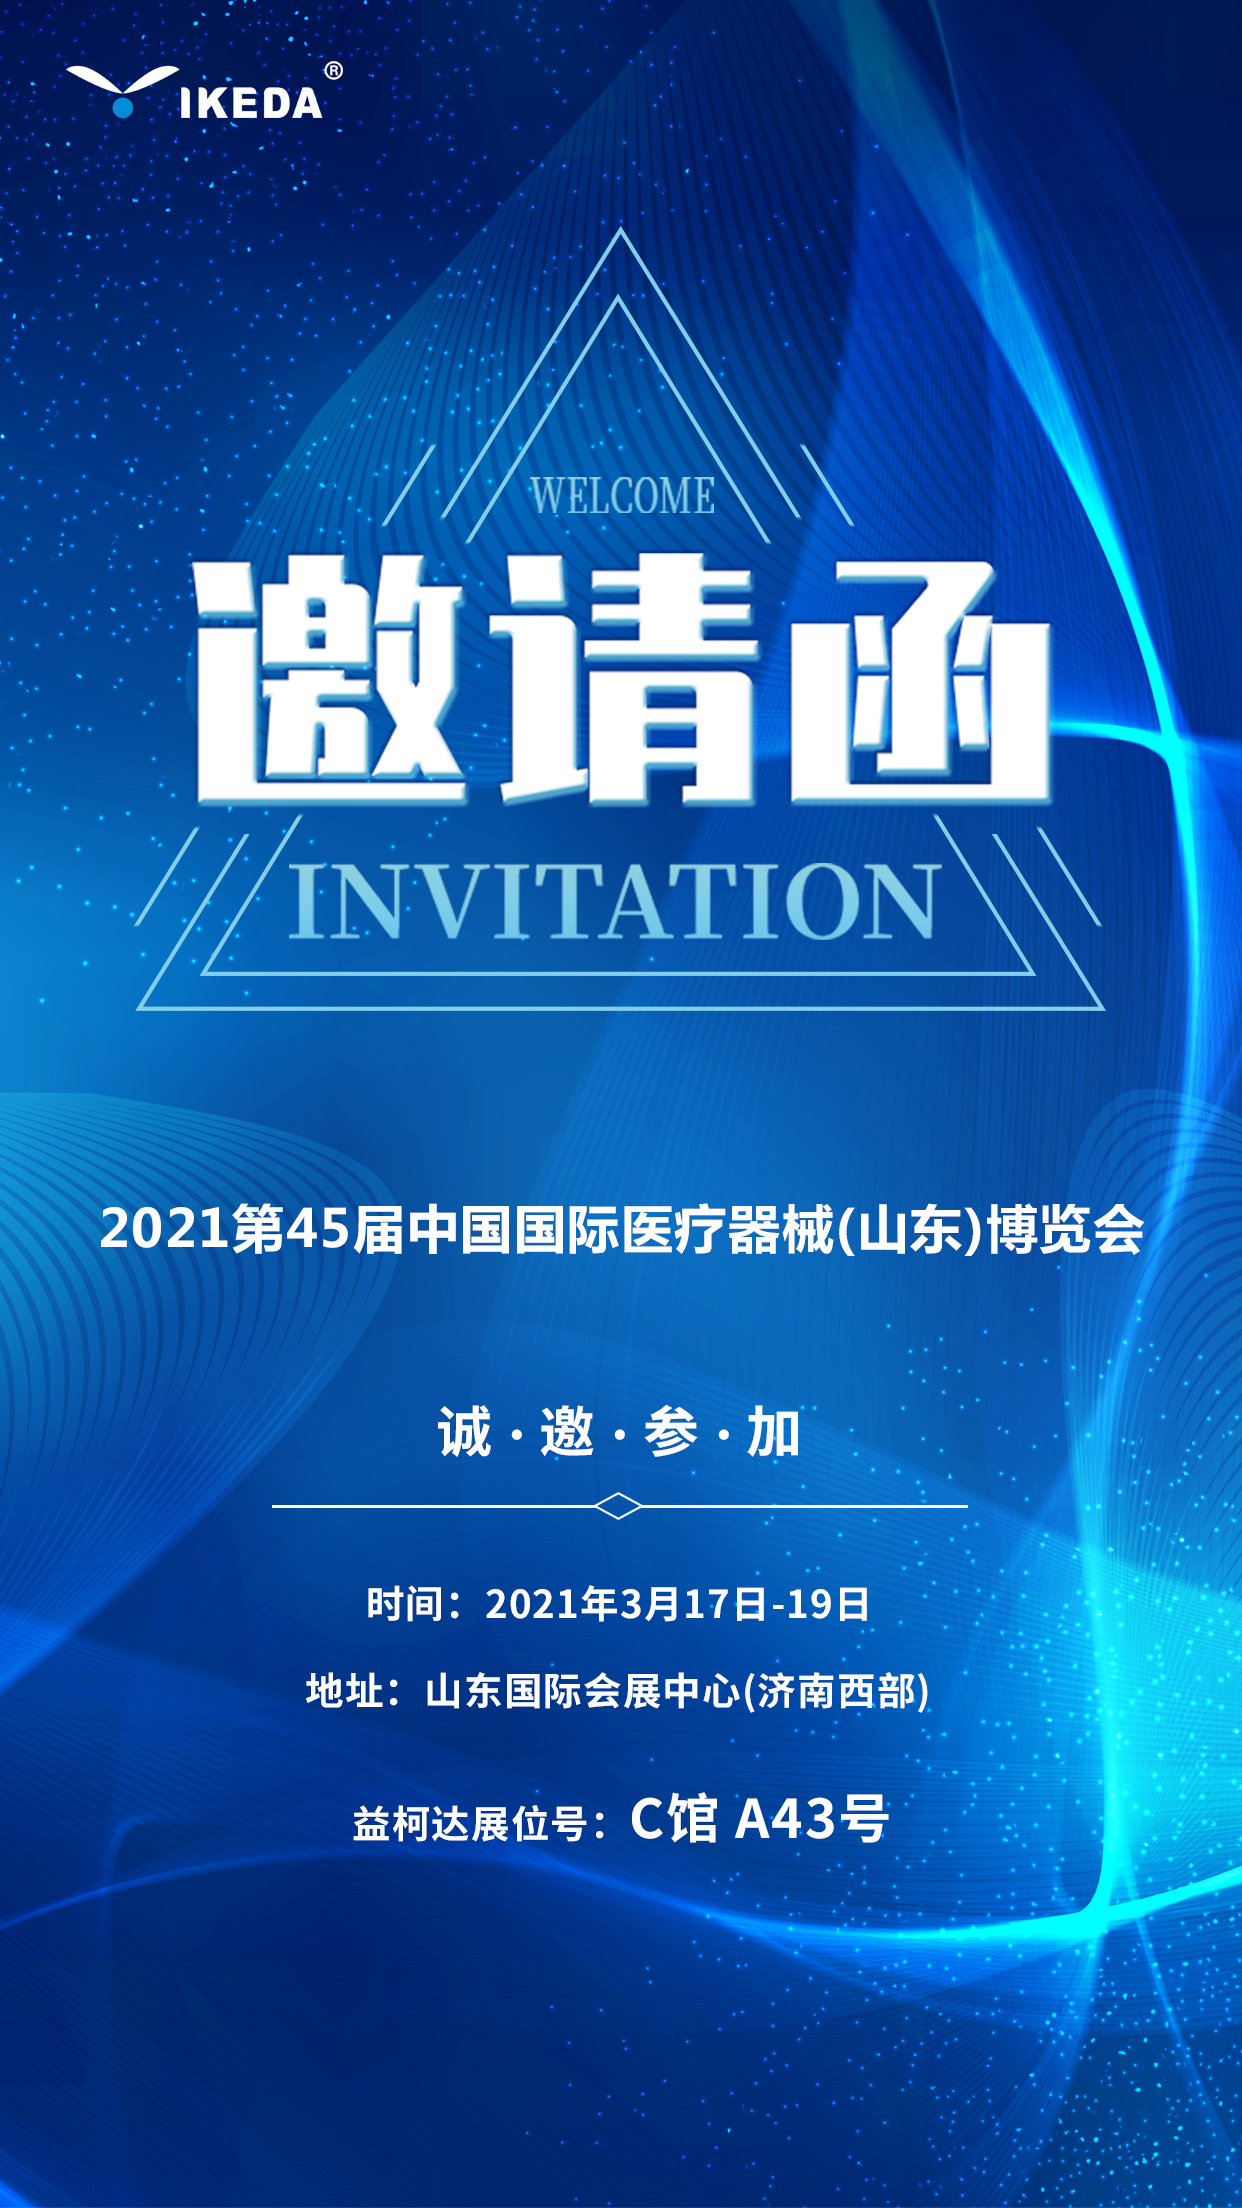 益柯达邀您参加2021第45届中国国际医疗器械(山东)博览会